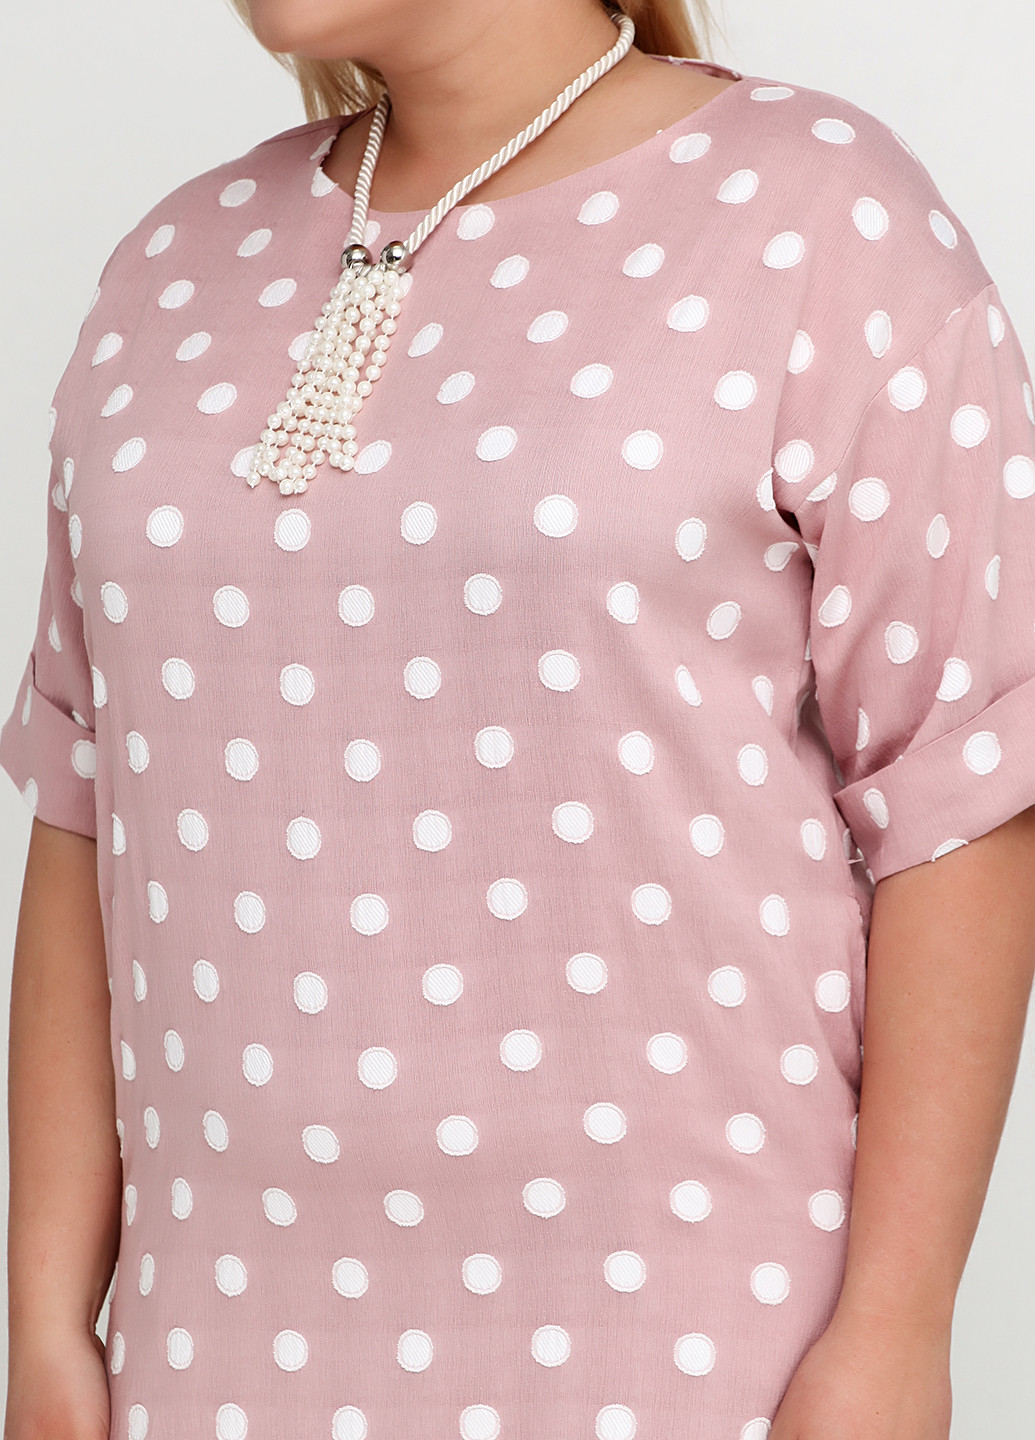 Бледно-розовое деловое комплект (платье, подвеска) I Love Comfort в горошек